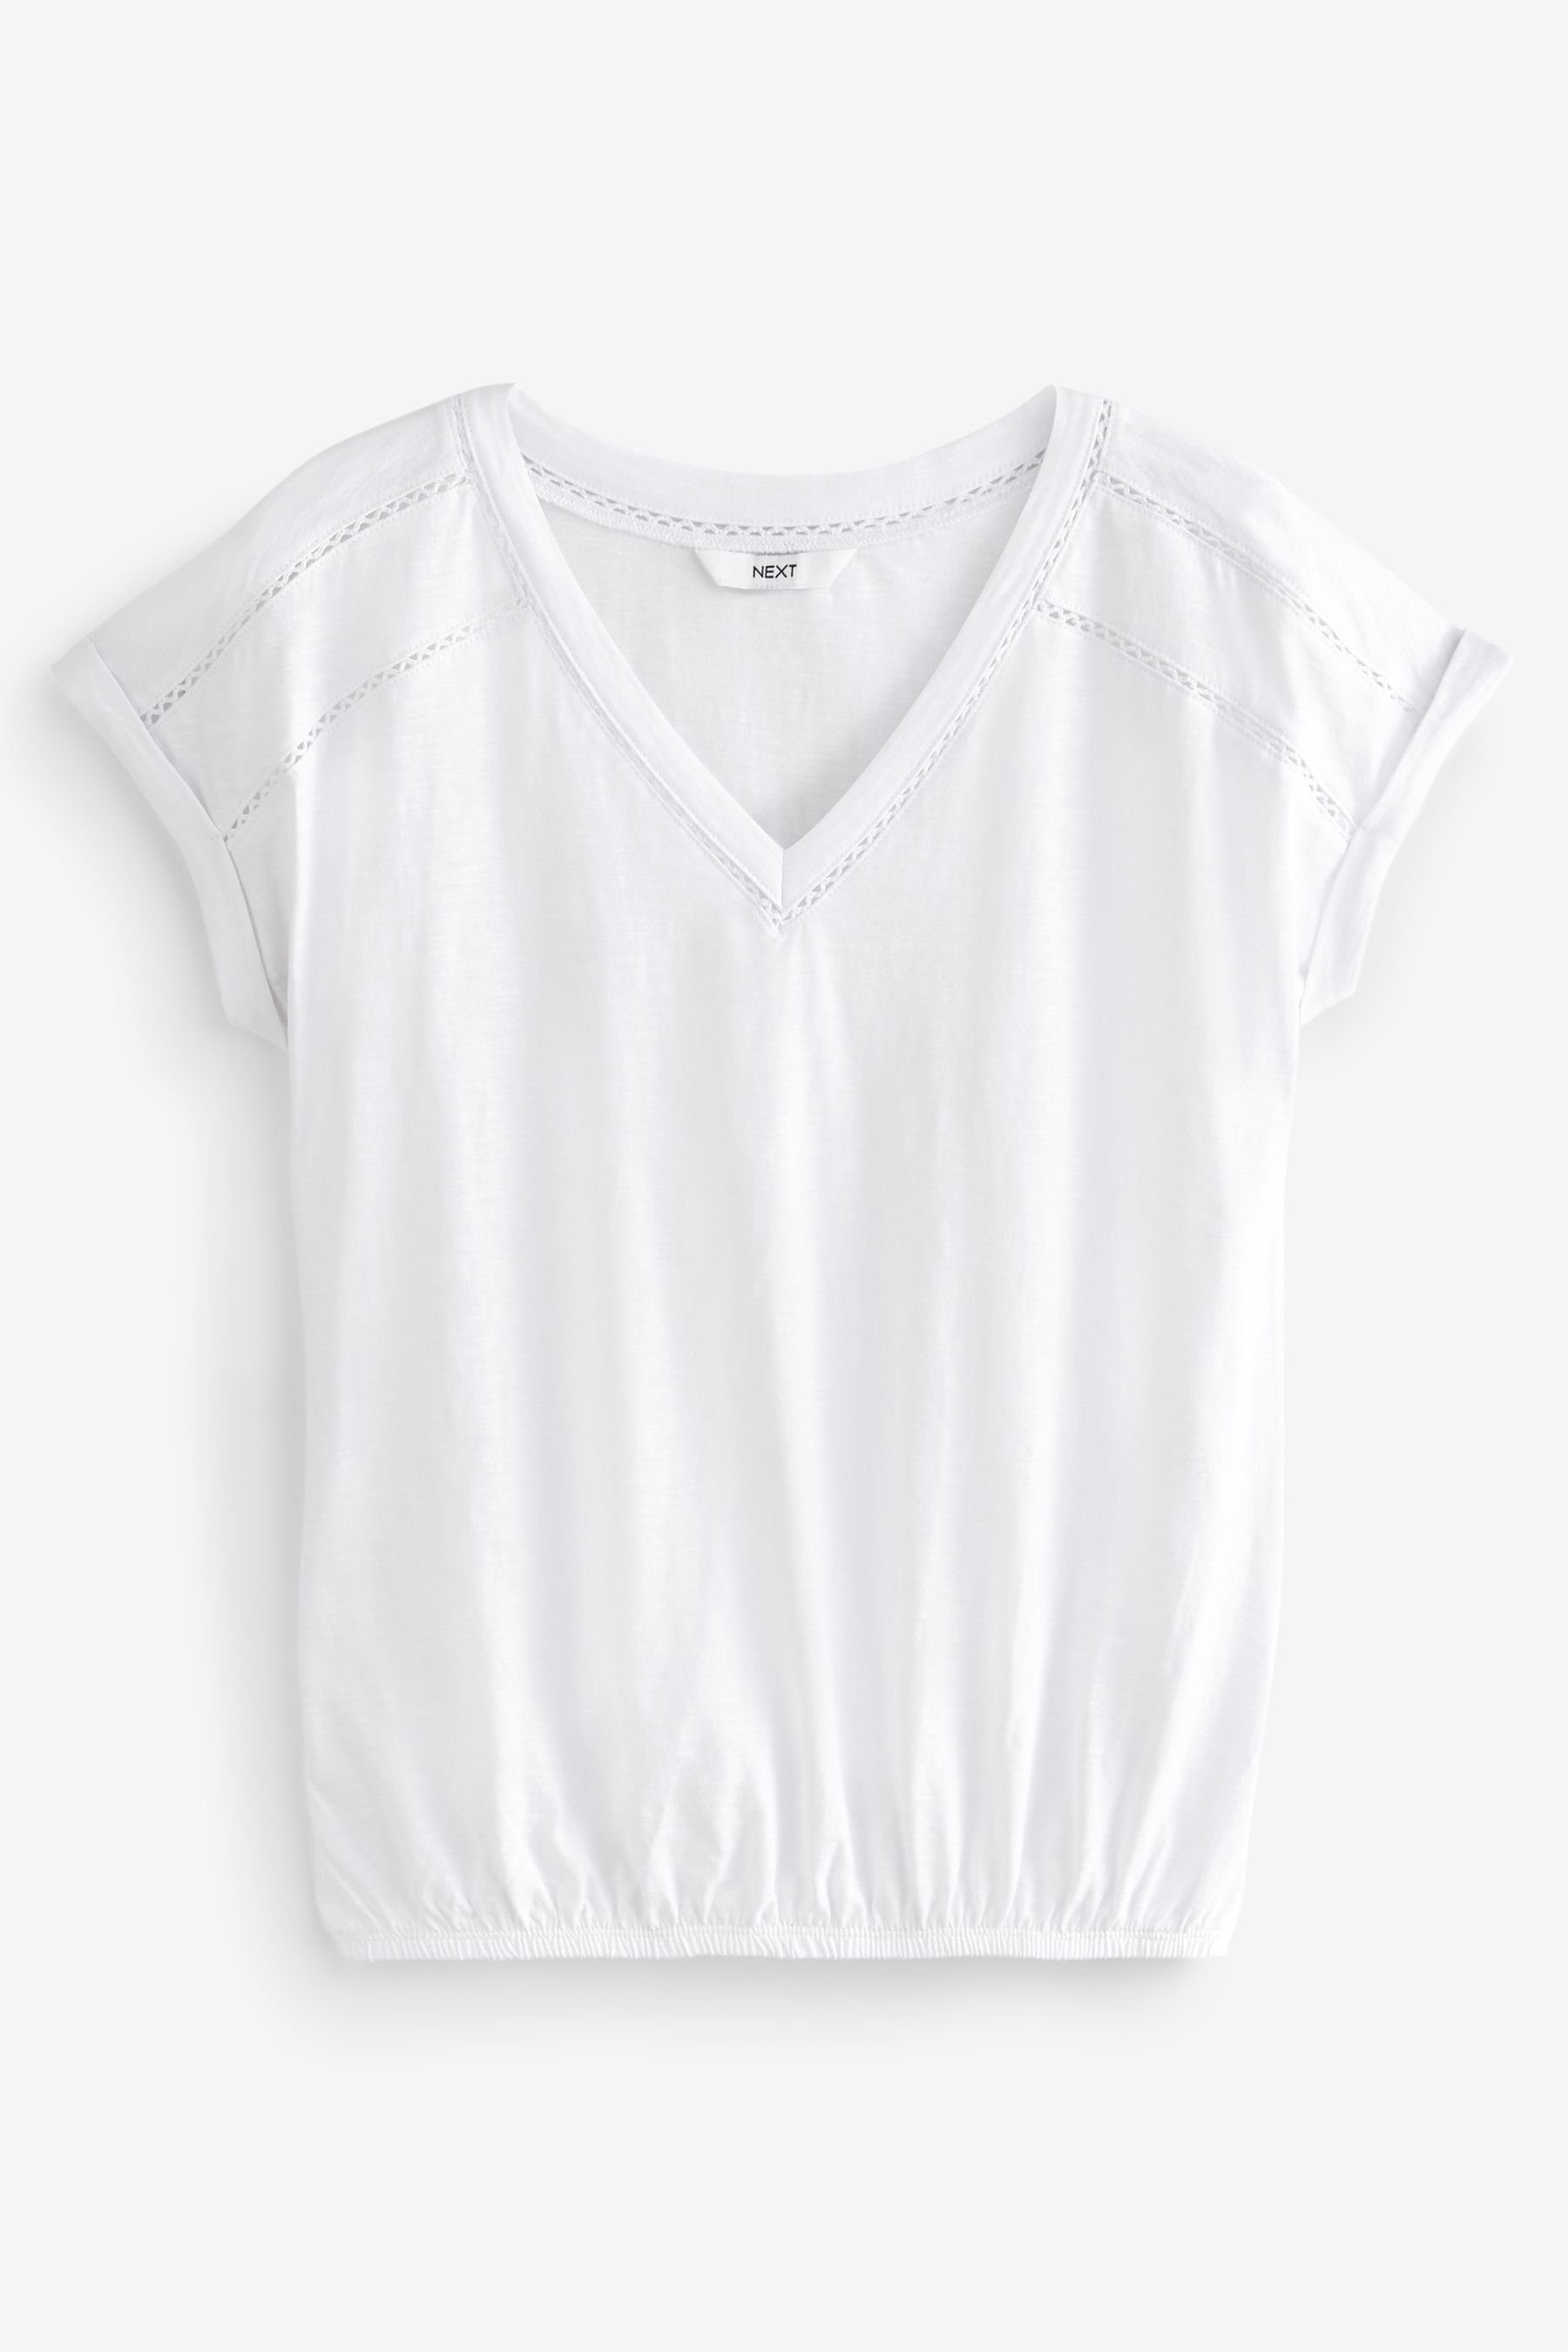 Ballonsaum White T-Shirt und mit V-Ausschnitt Top Next (1-tlg)